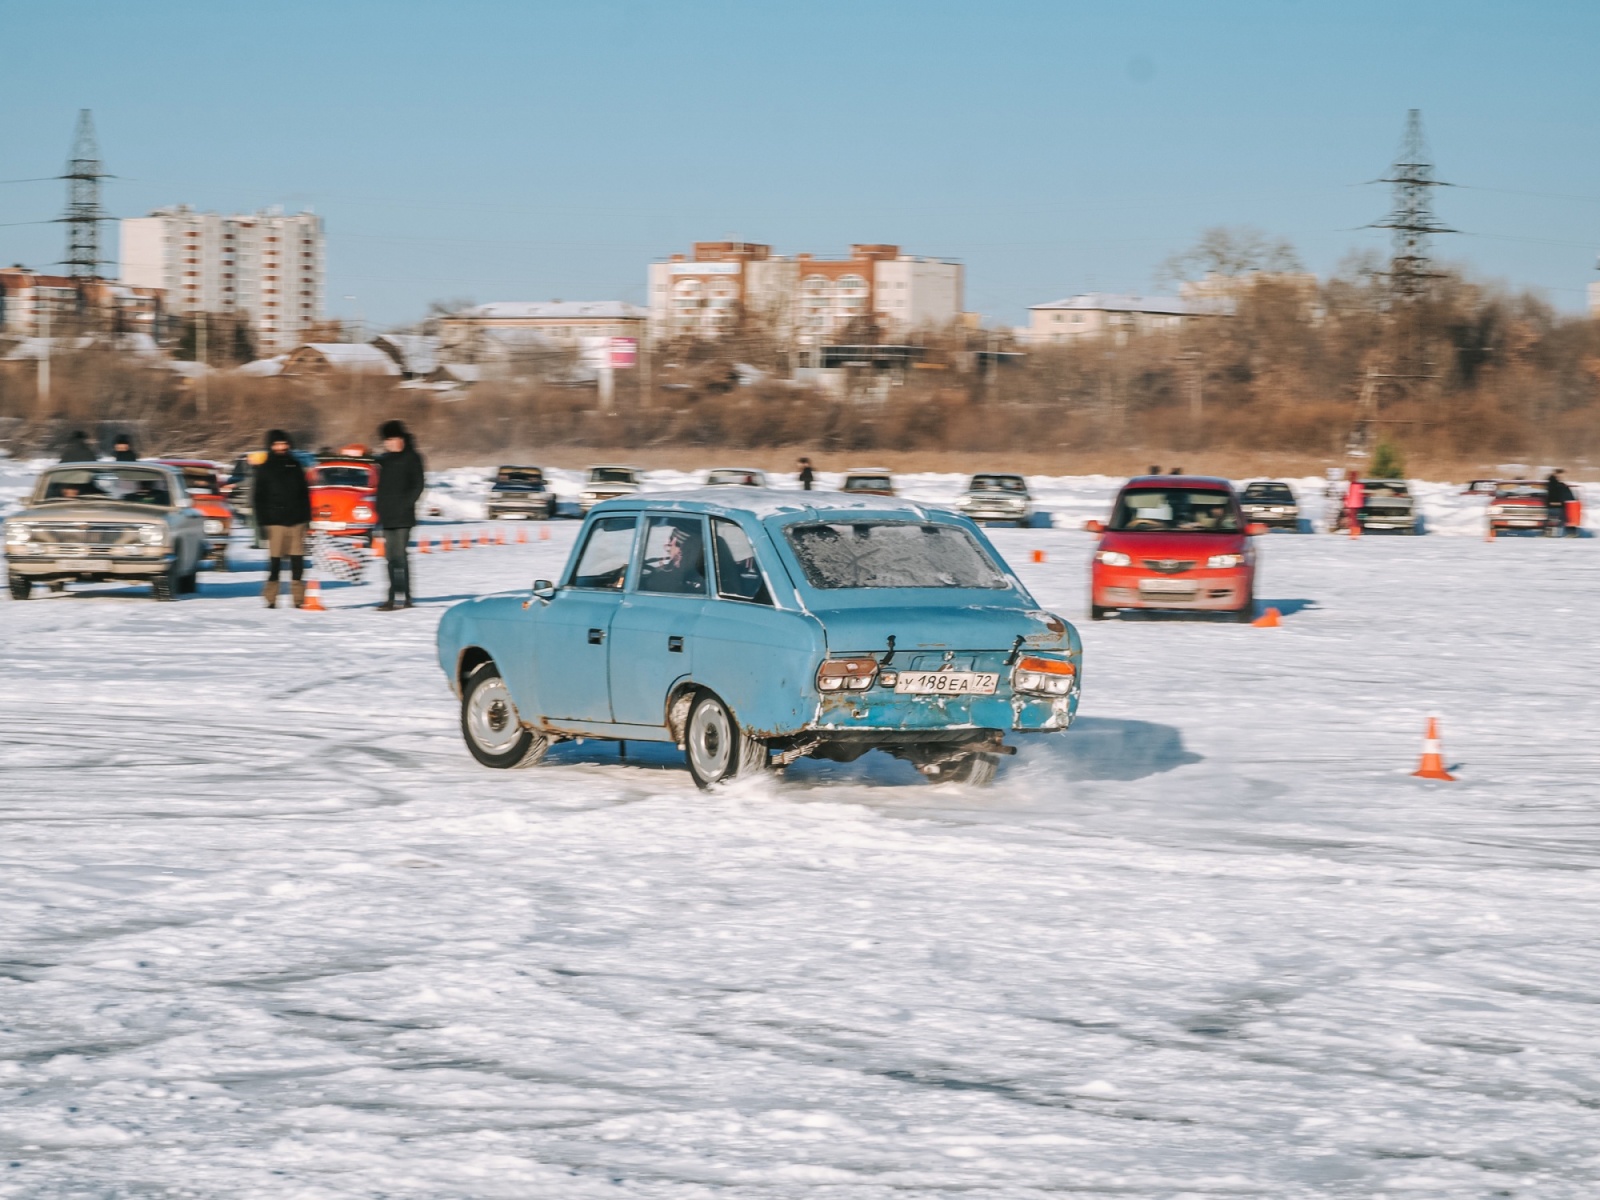 Гонки на алебашево - В Тюмени ретро-гонщики растопили лед на озере Алебашево.  redka.com.ua